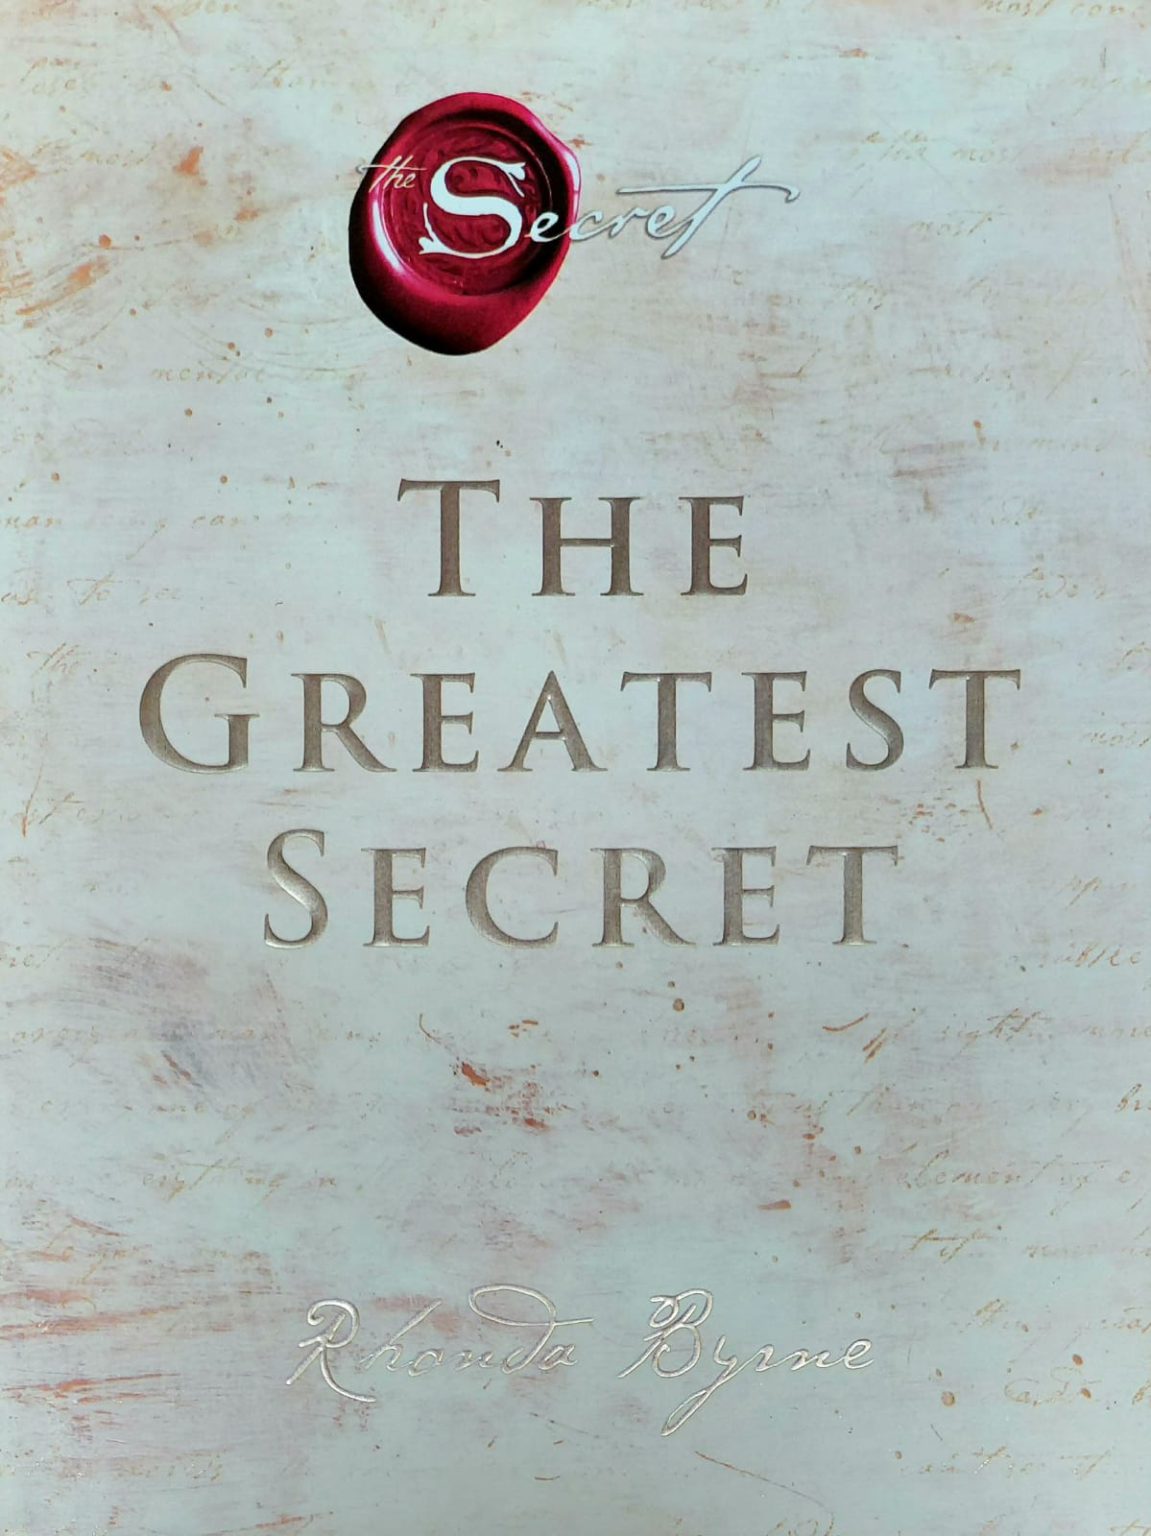 The Secret The Greatest Secret booksy.lk